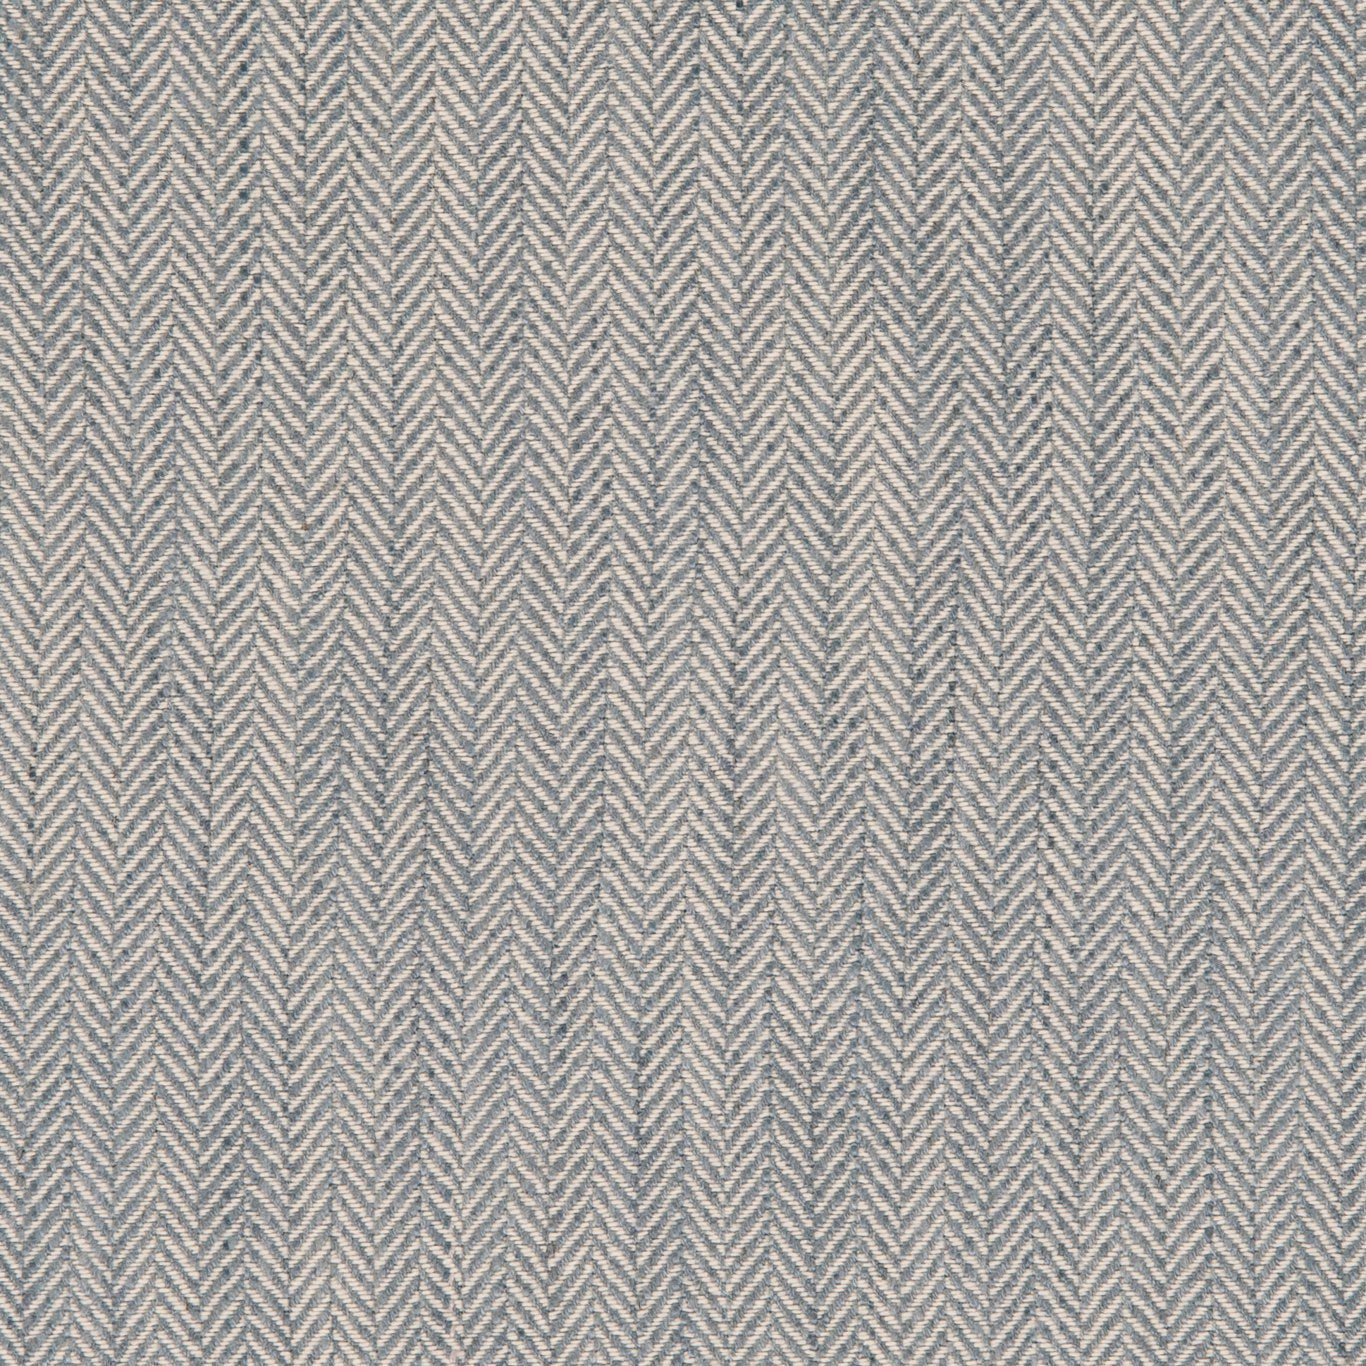 Argyle Fabric by Clarke & Clarke - F0582/02 - Denim